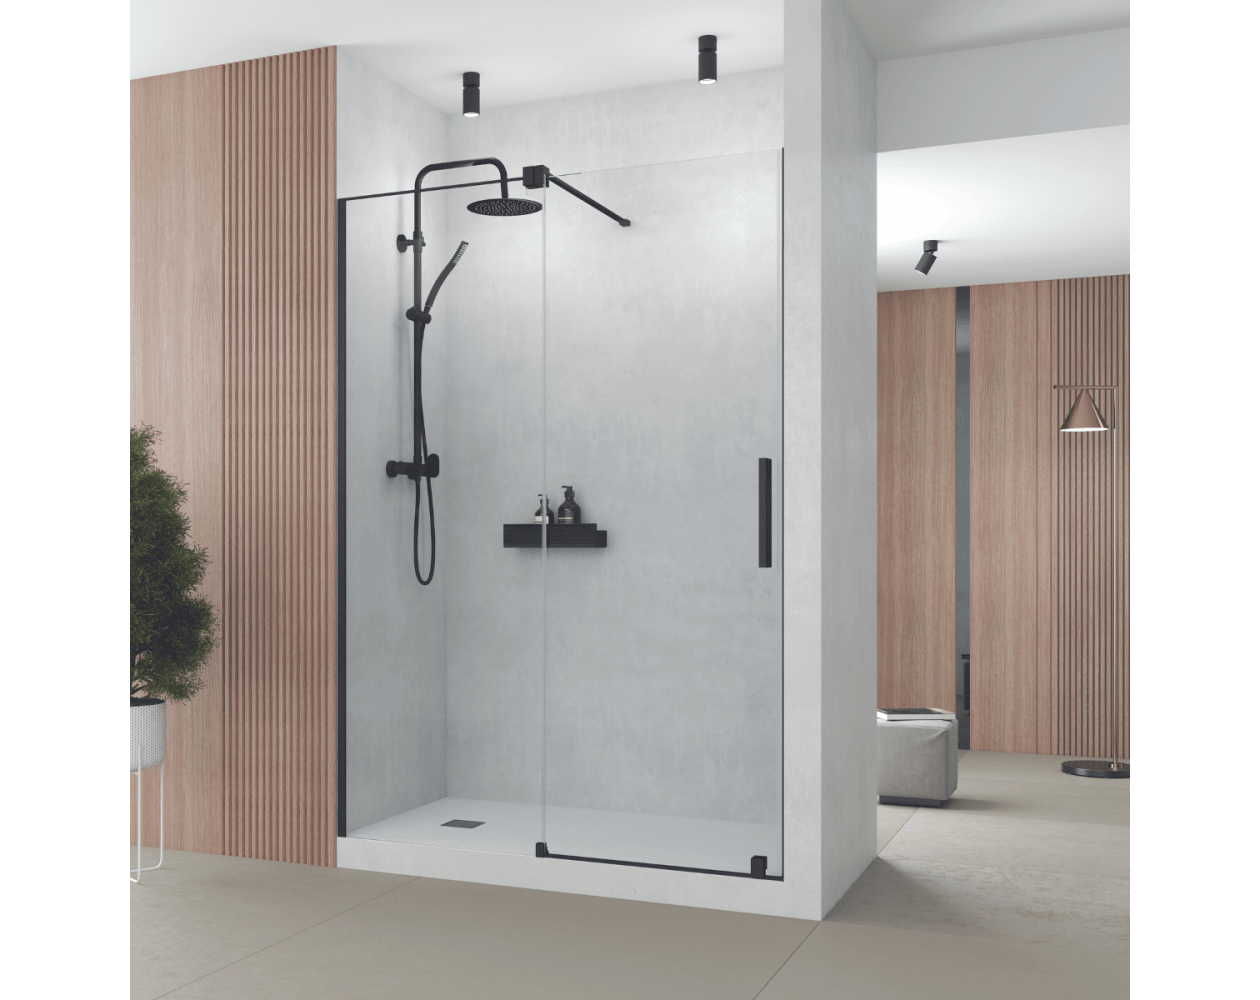 Perfiles y sistemas para baño - perfil para plato de ducha